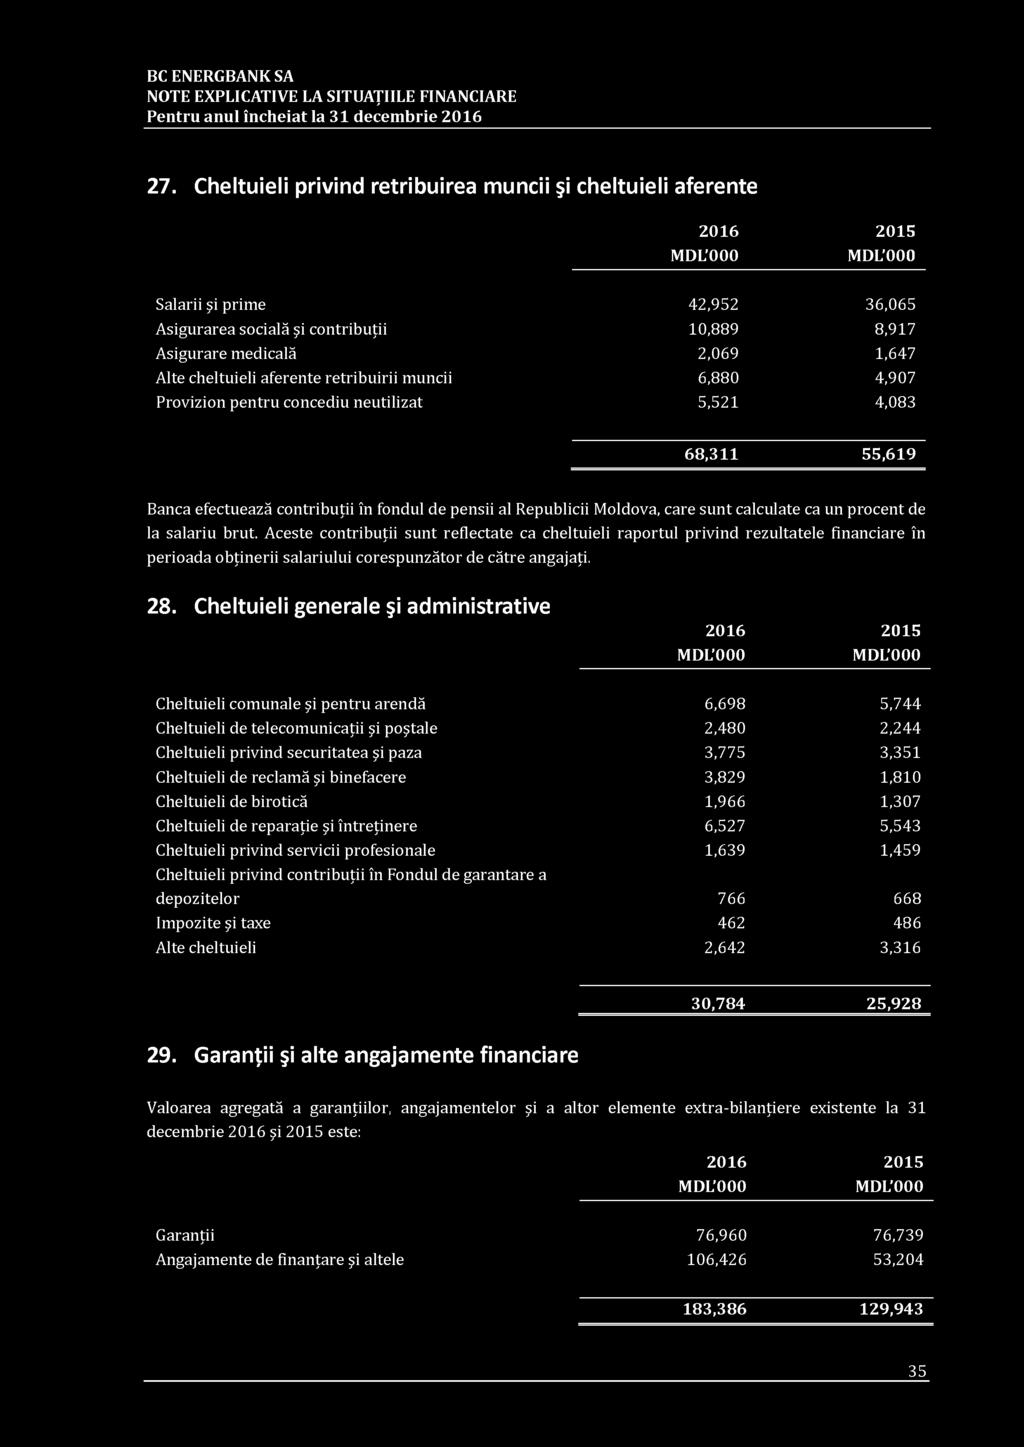 aferente retribuirii muncii 6,880 4,907 Provizion pentru concediu neutilizat 5,521 4,083 68,311 55,619 Banca efectuează contribuţii în fondul de pensii al Republicii Moldova, care sunt calculate ca